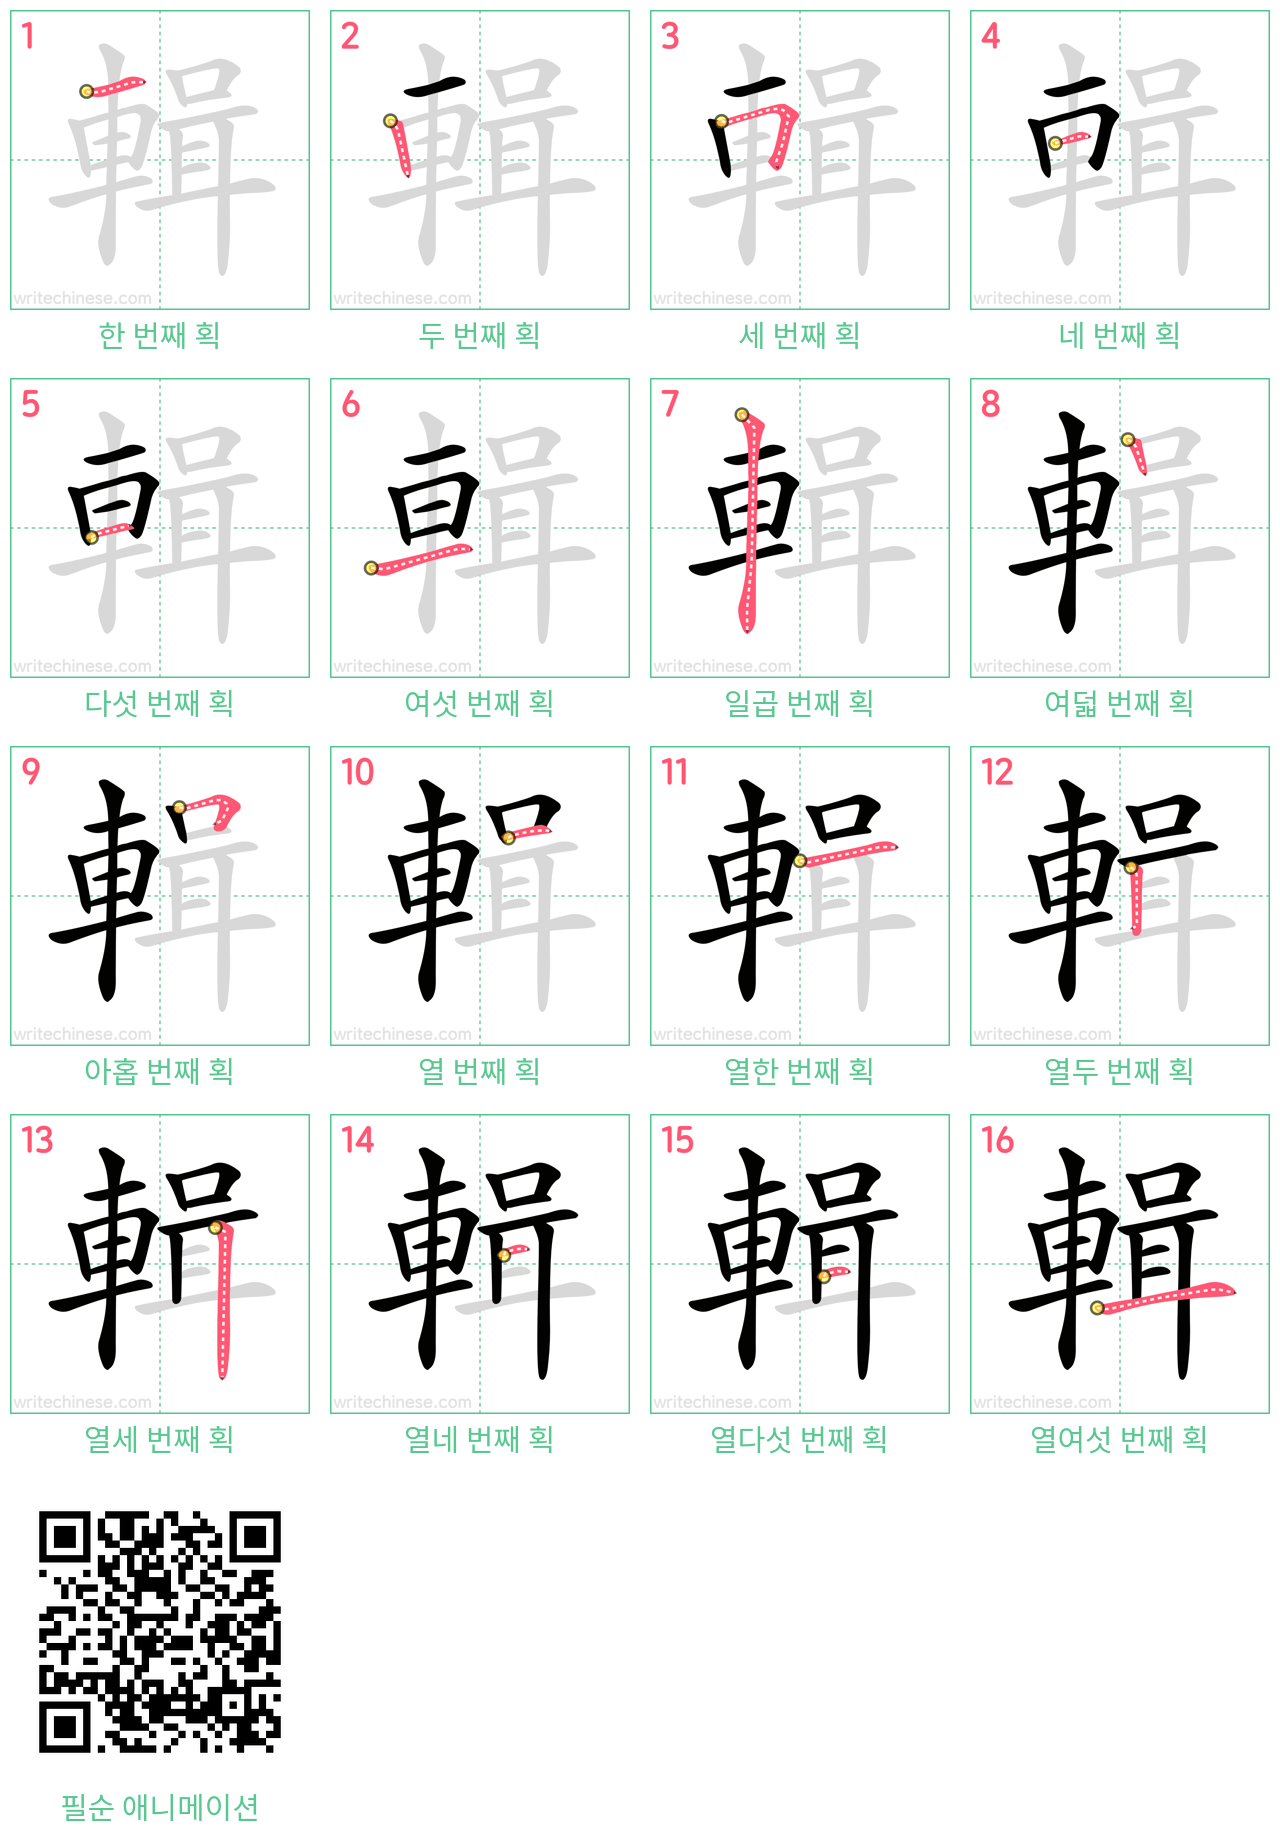 輯 step-by-step stroke order diagrams